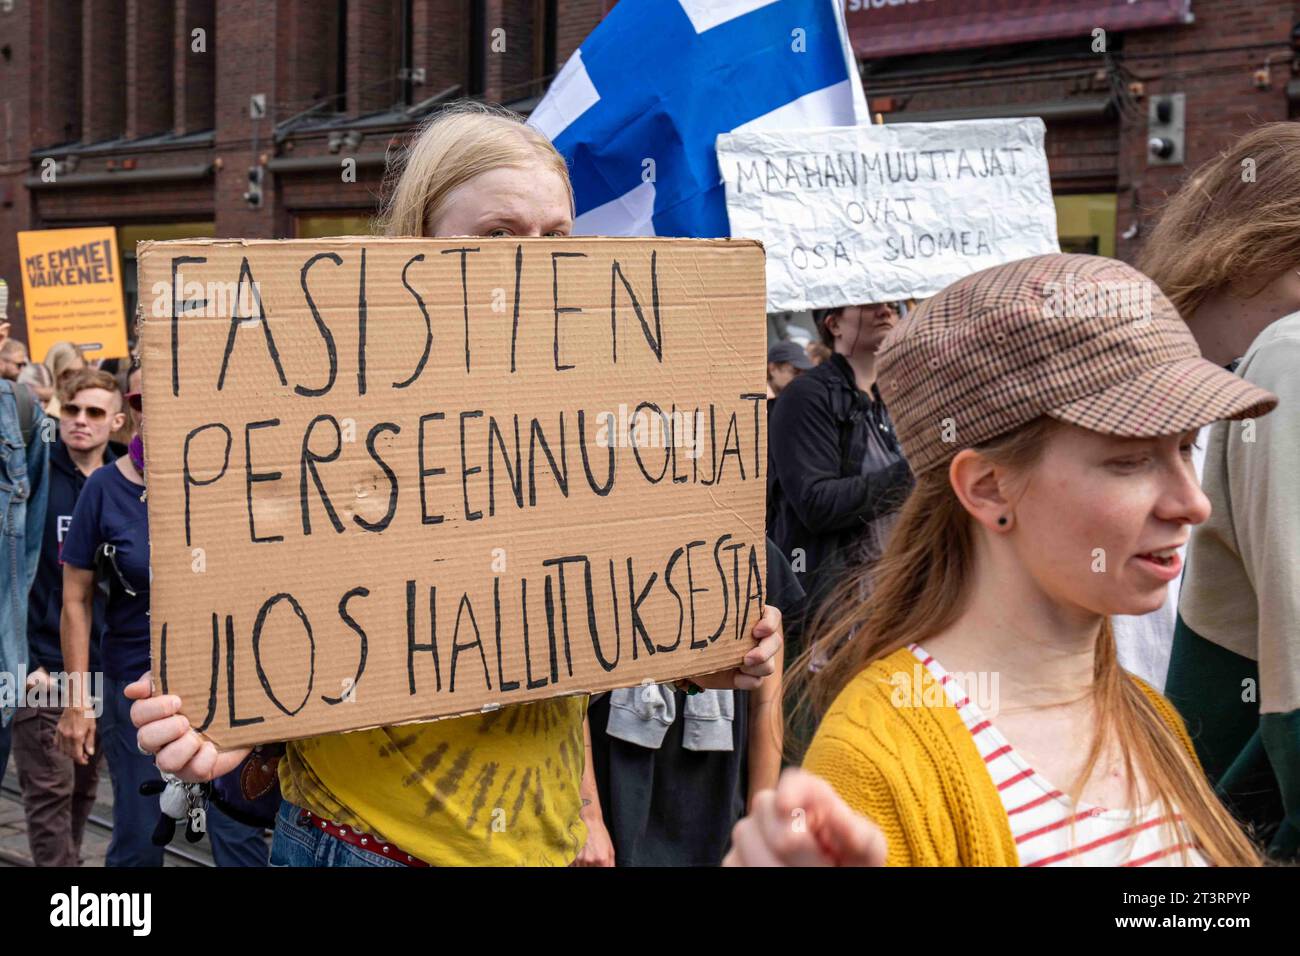 Fasistien perseennuolijat ulos hallituksesta. Manifestante con un cartello di cartone contro di me emme vaikene! Manifestazione contro il razzismo a Helsinki, Finlandia. Foto Stock